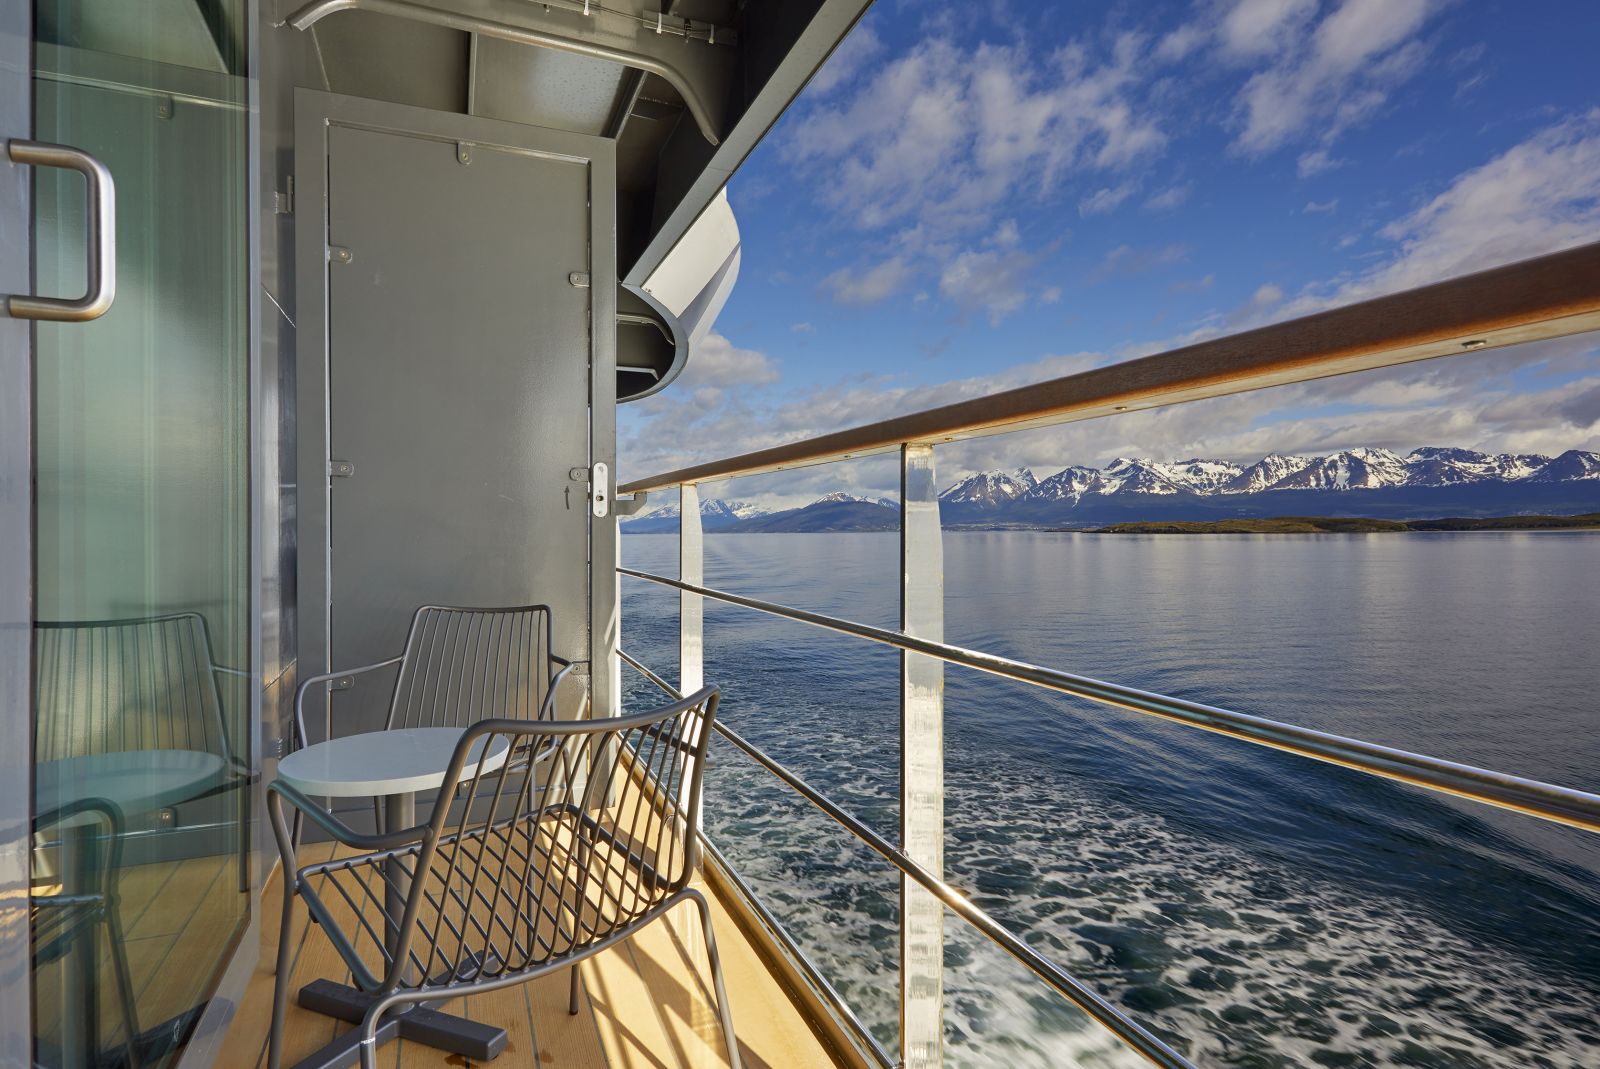 View from veranda on the Magellan Explorer Antarctica cruise ship